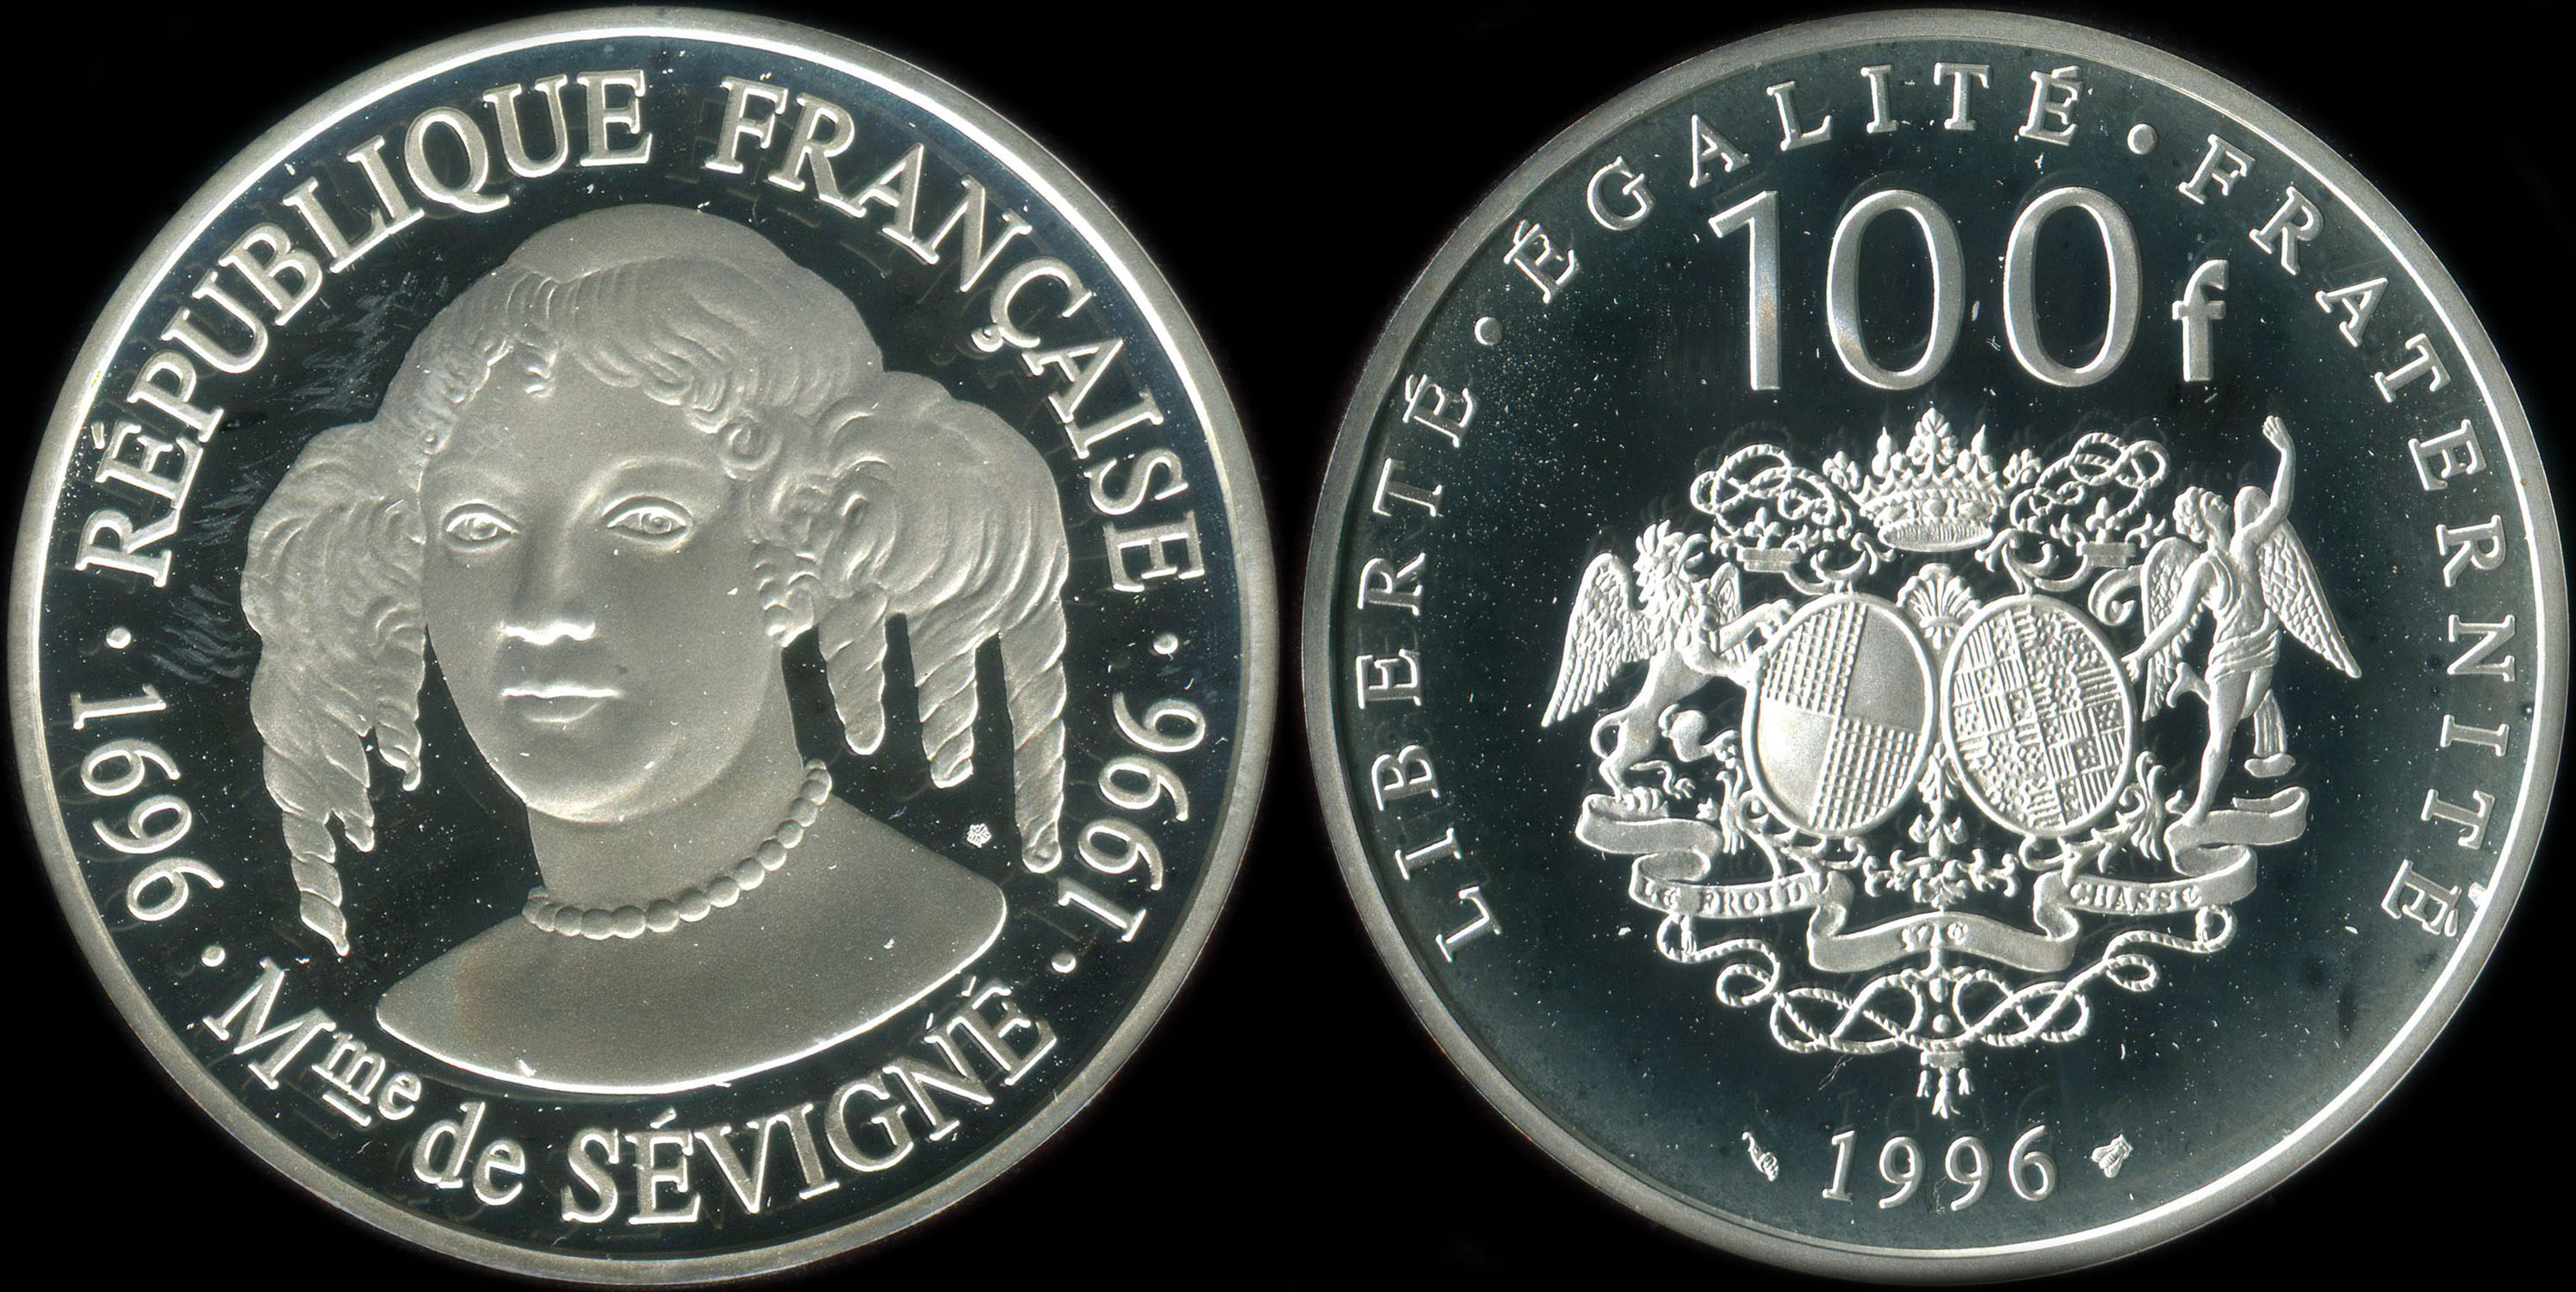 Pice de 100 francs 1996 - Personnages célèbres - Madame de Sévigné